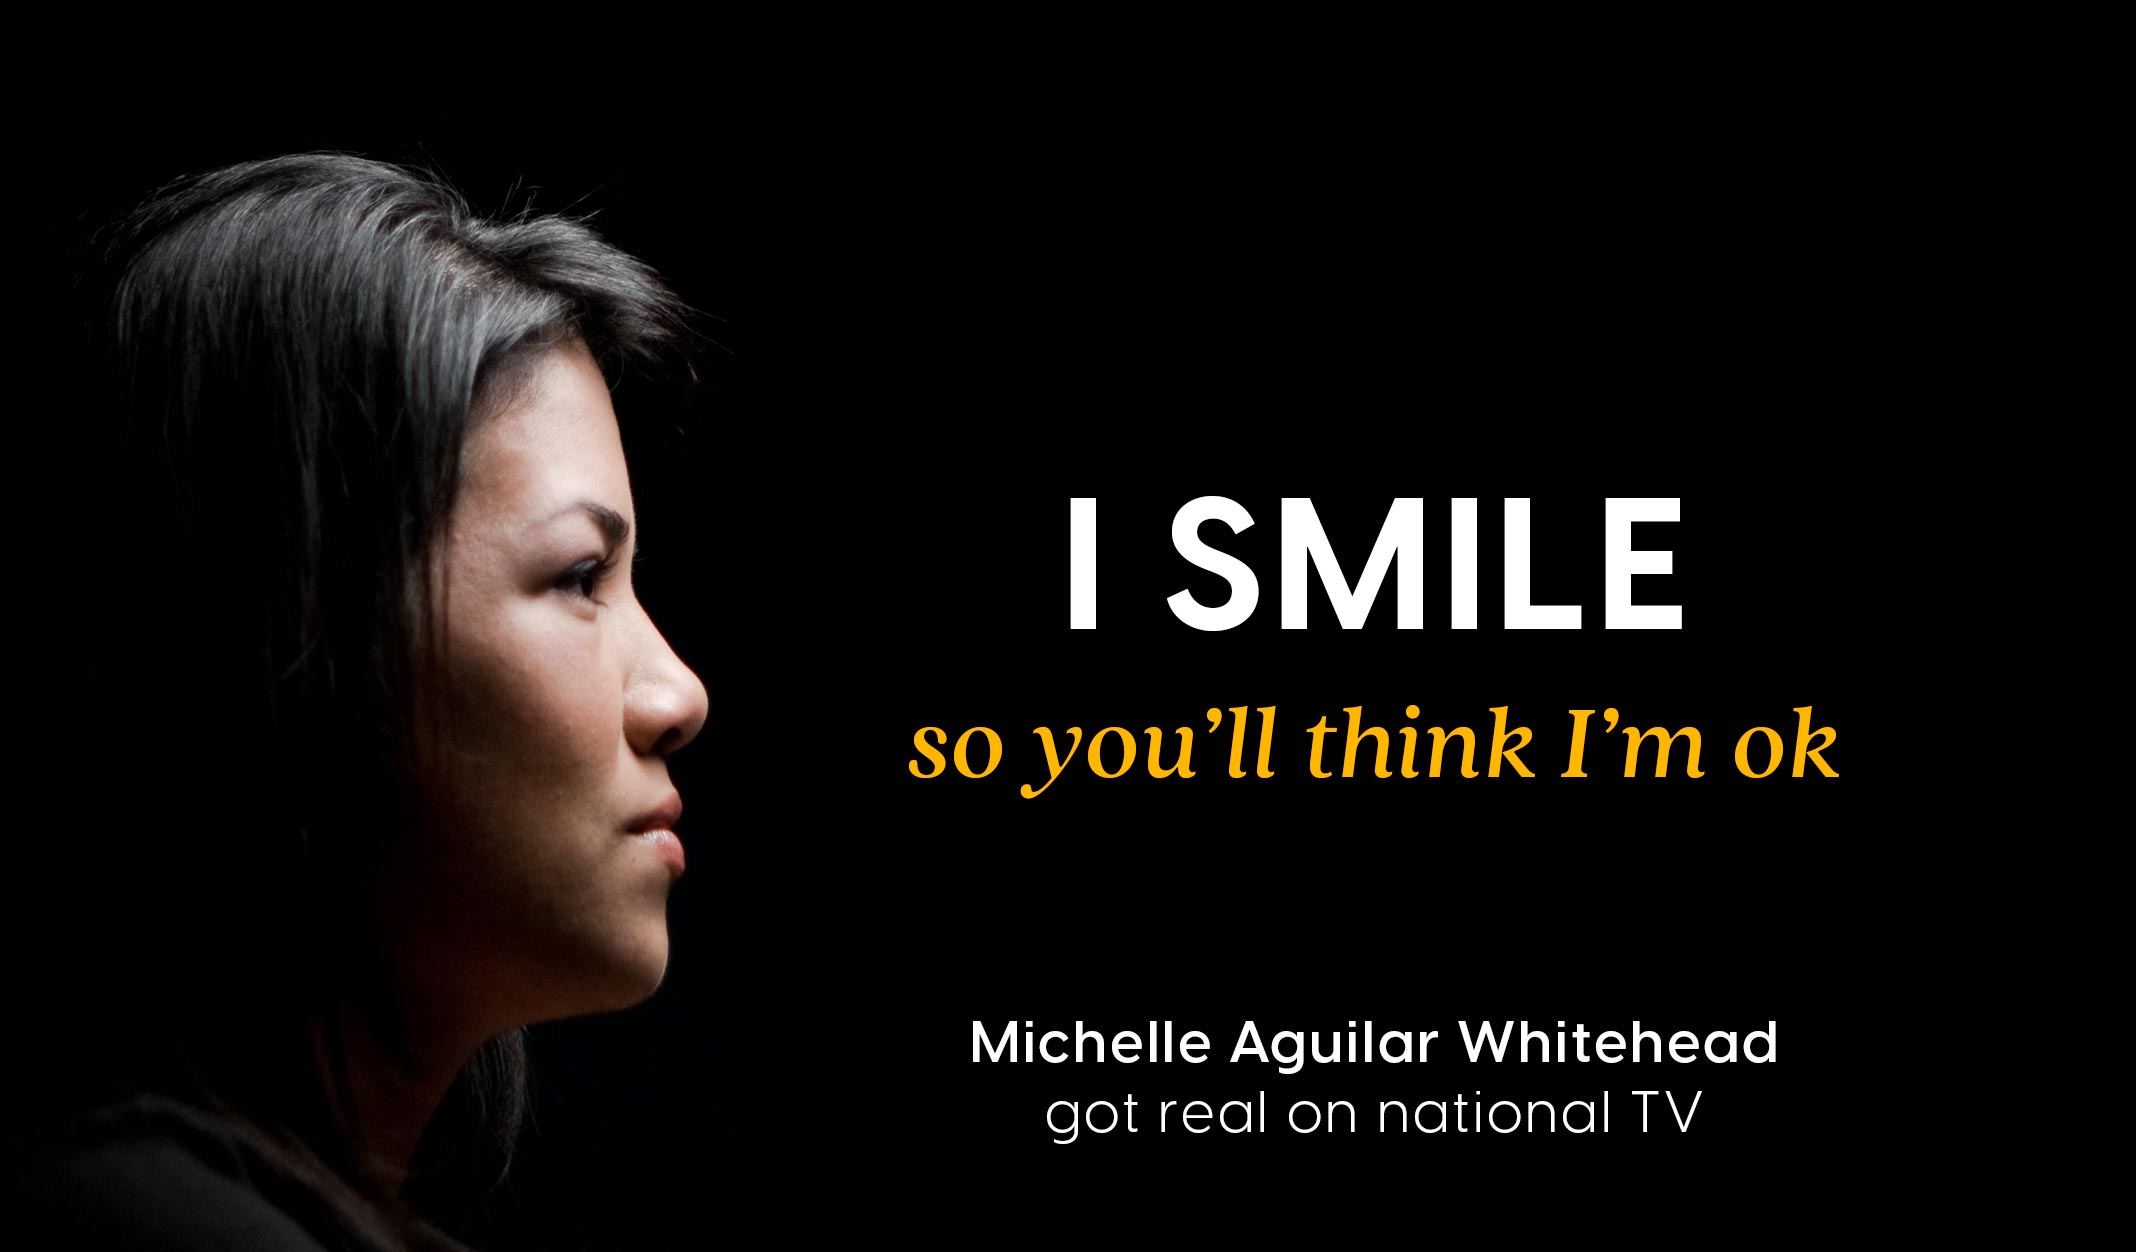 White Chair Film: Michelle Aguilar Whitehead